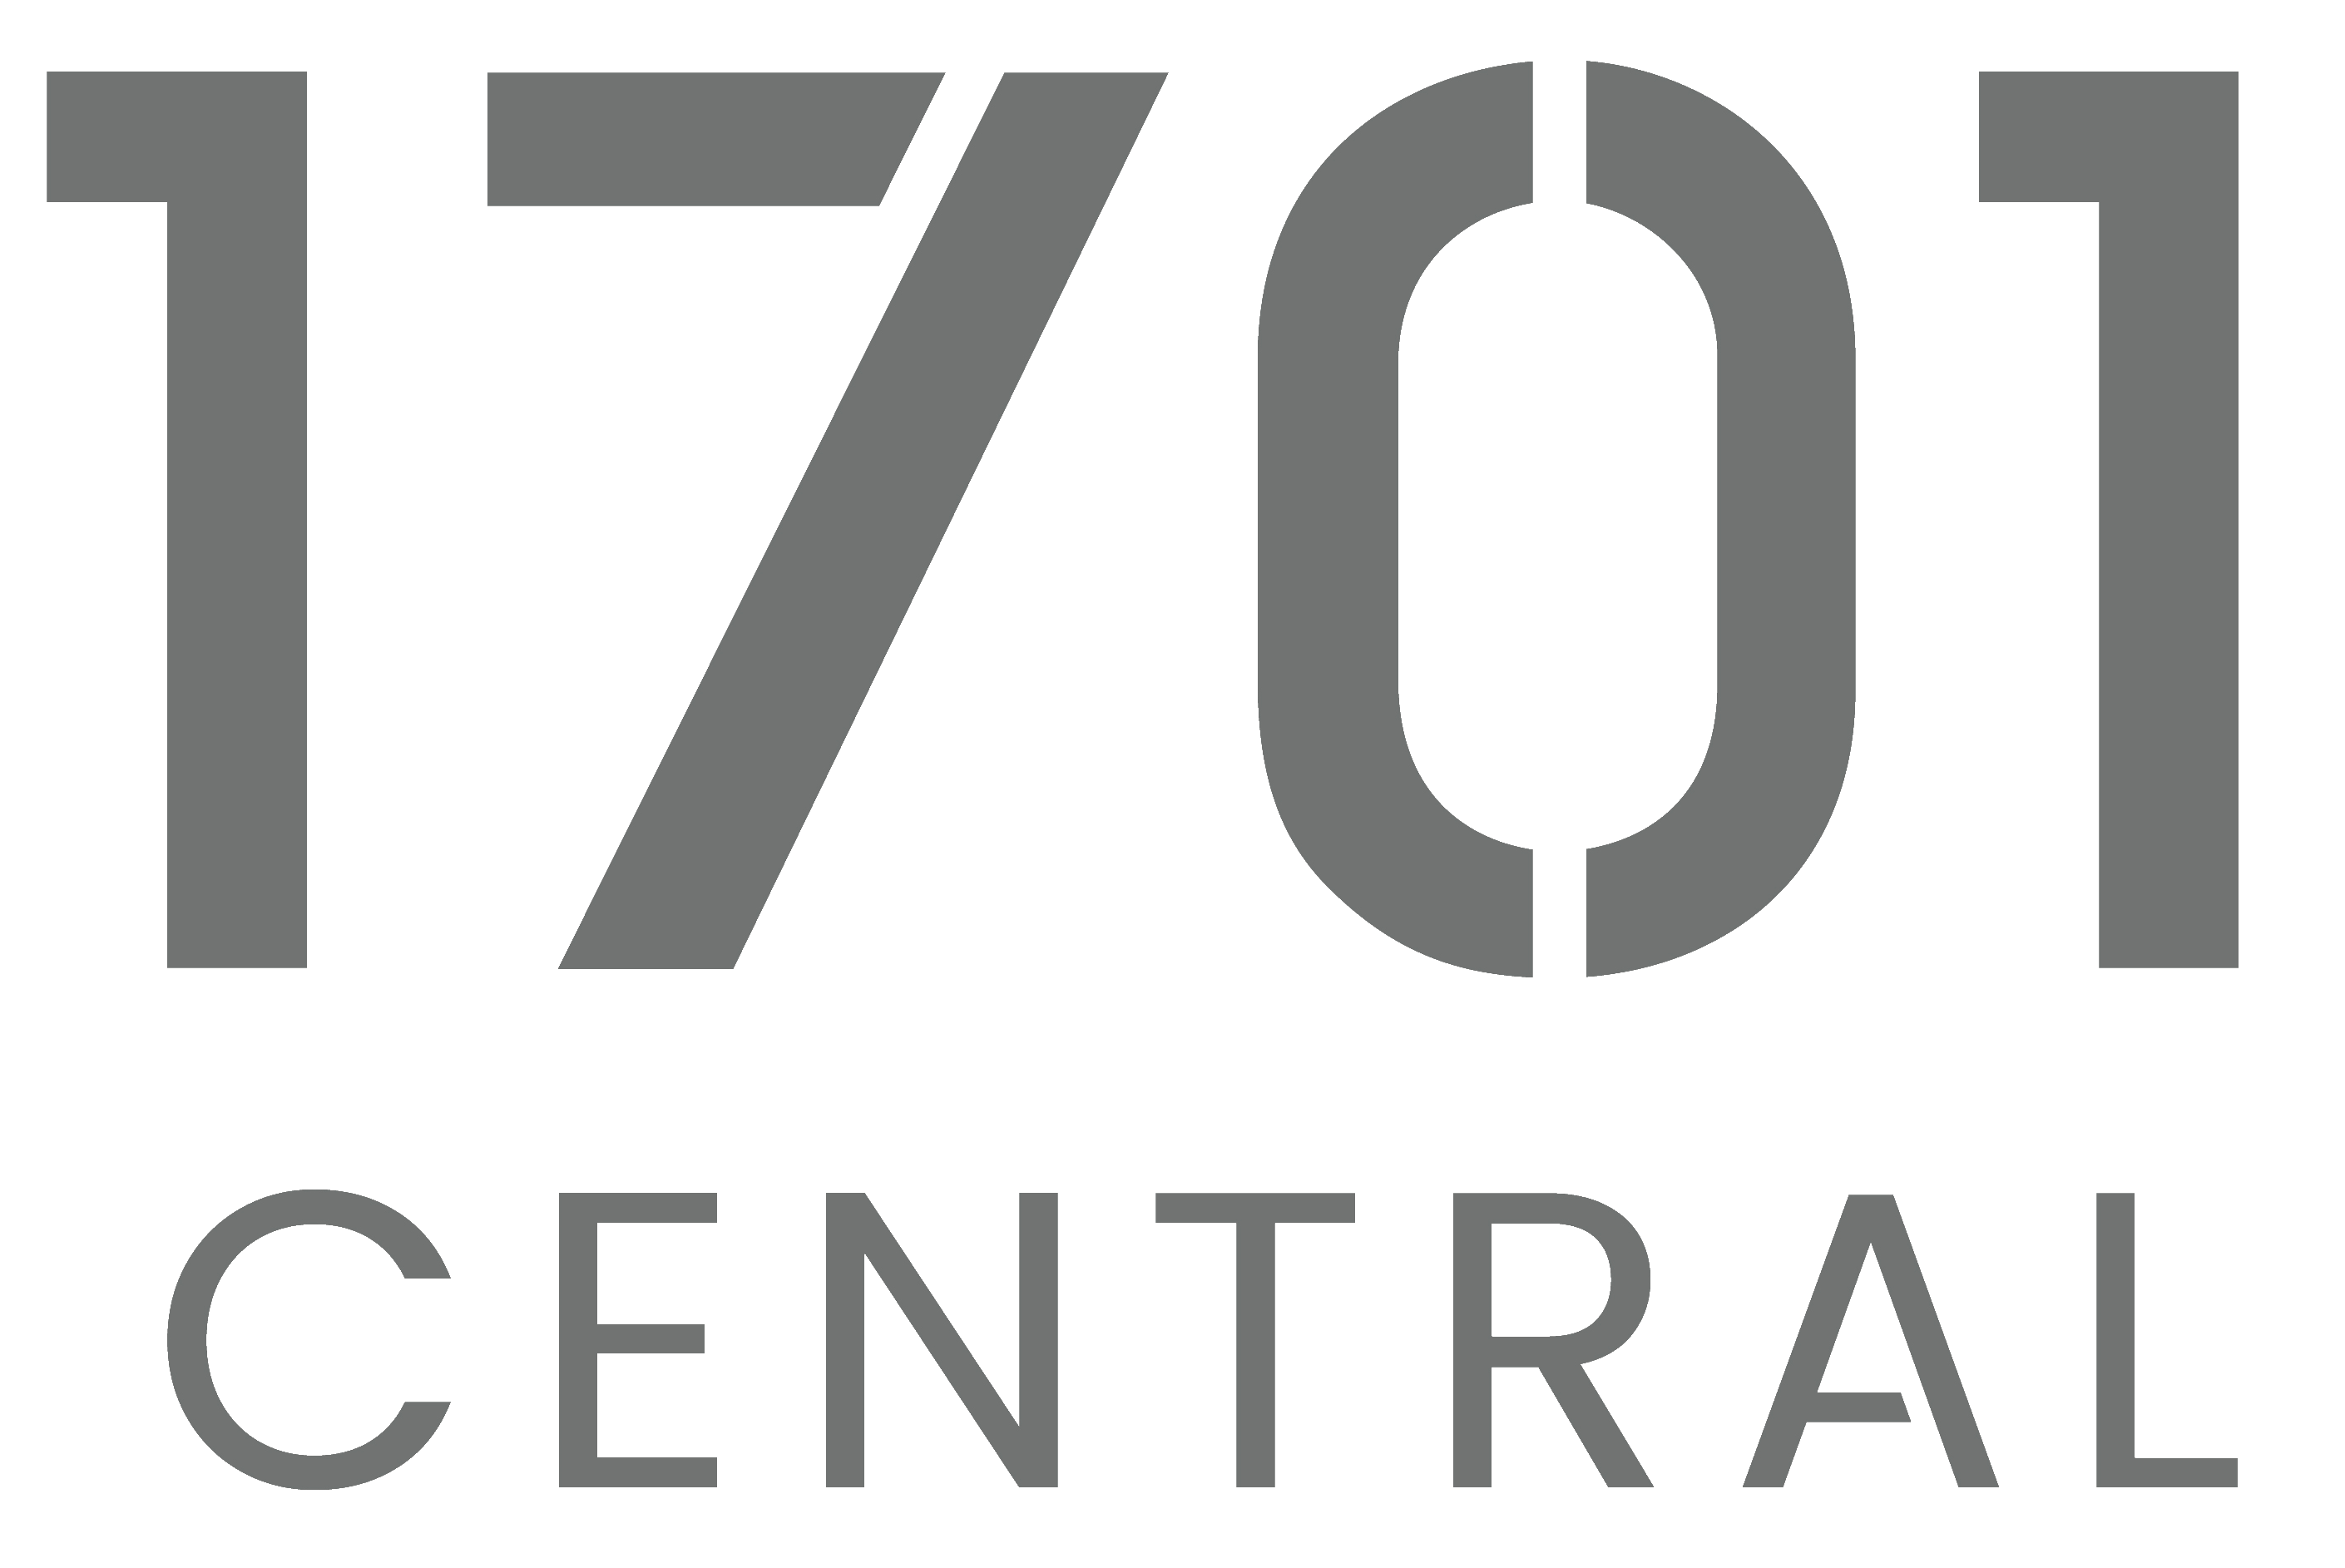 1701 Central Logo